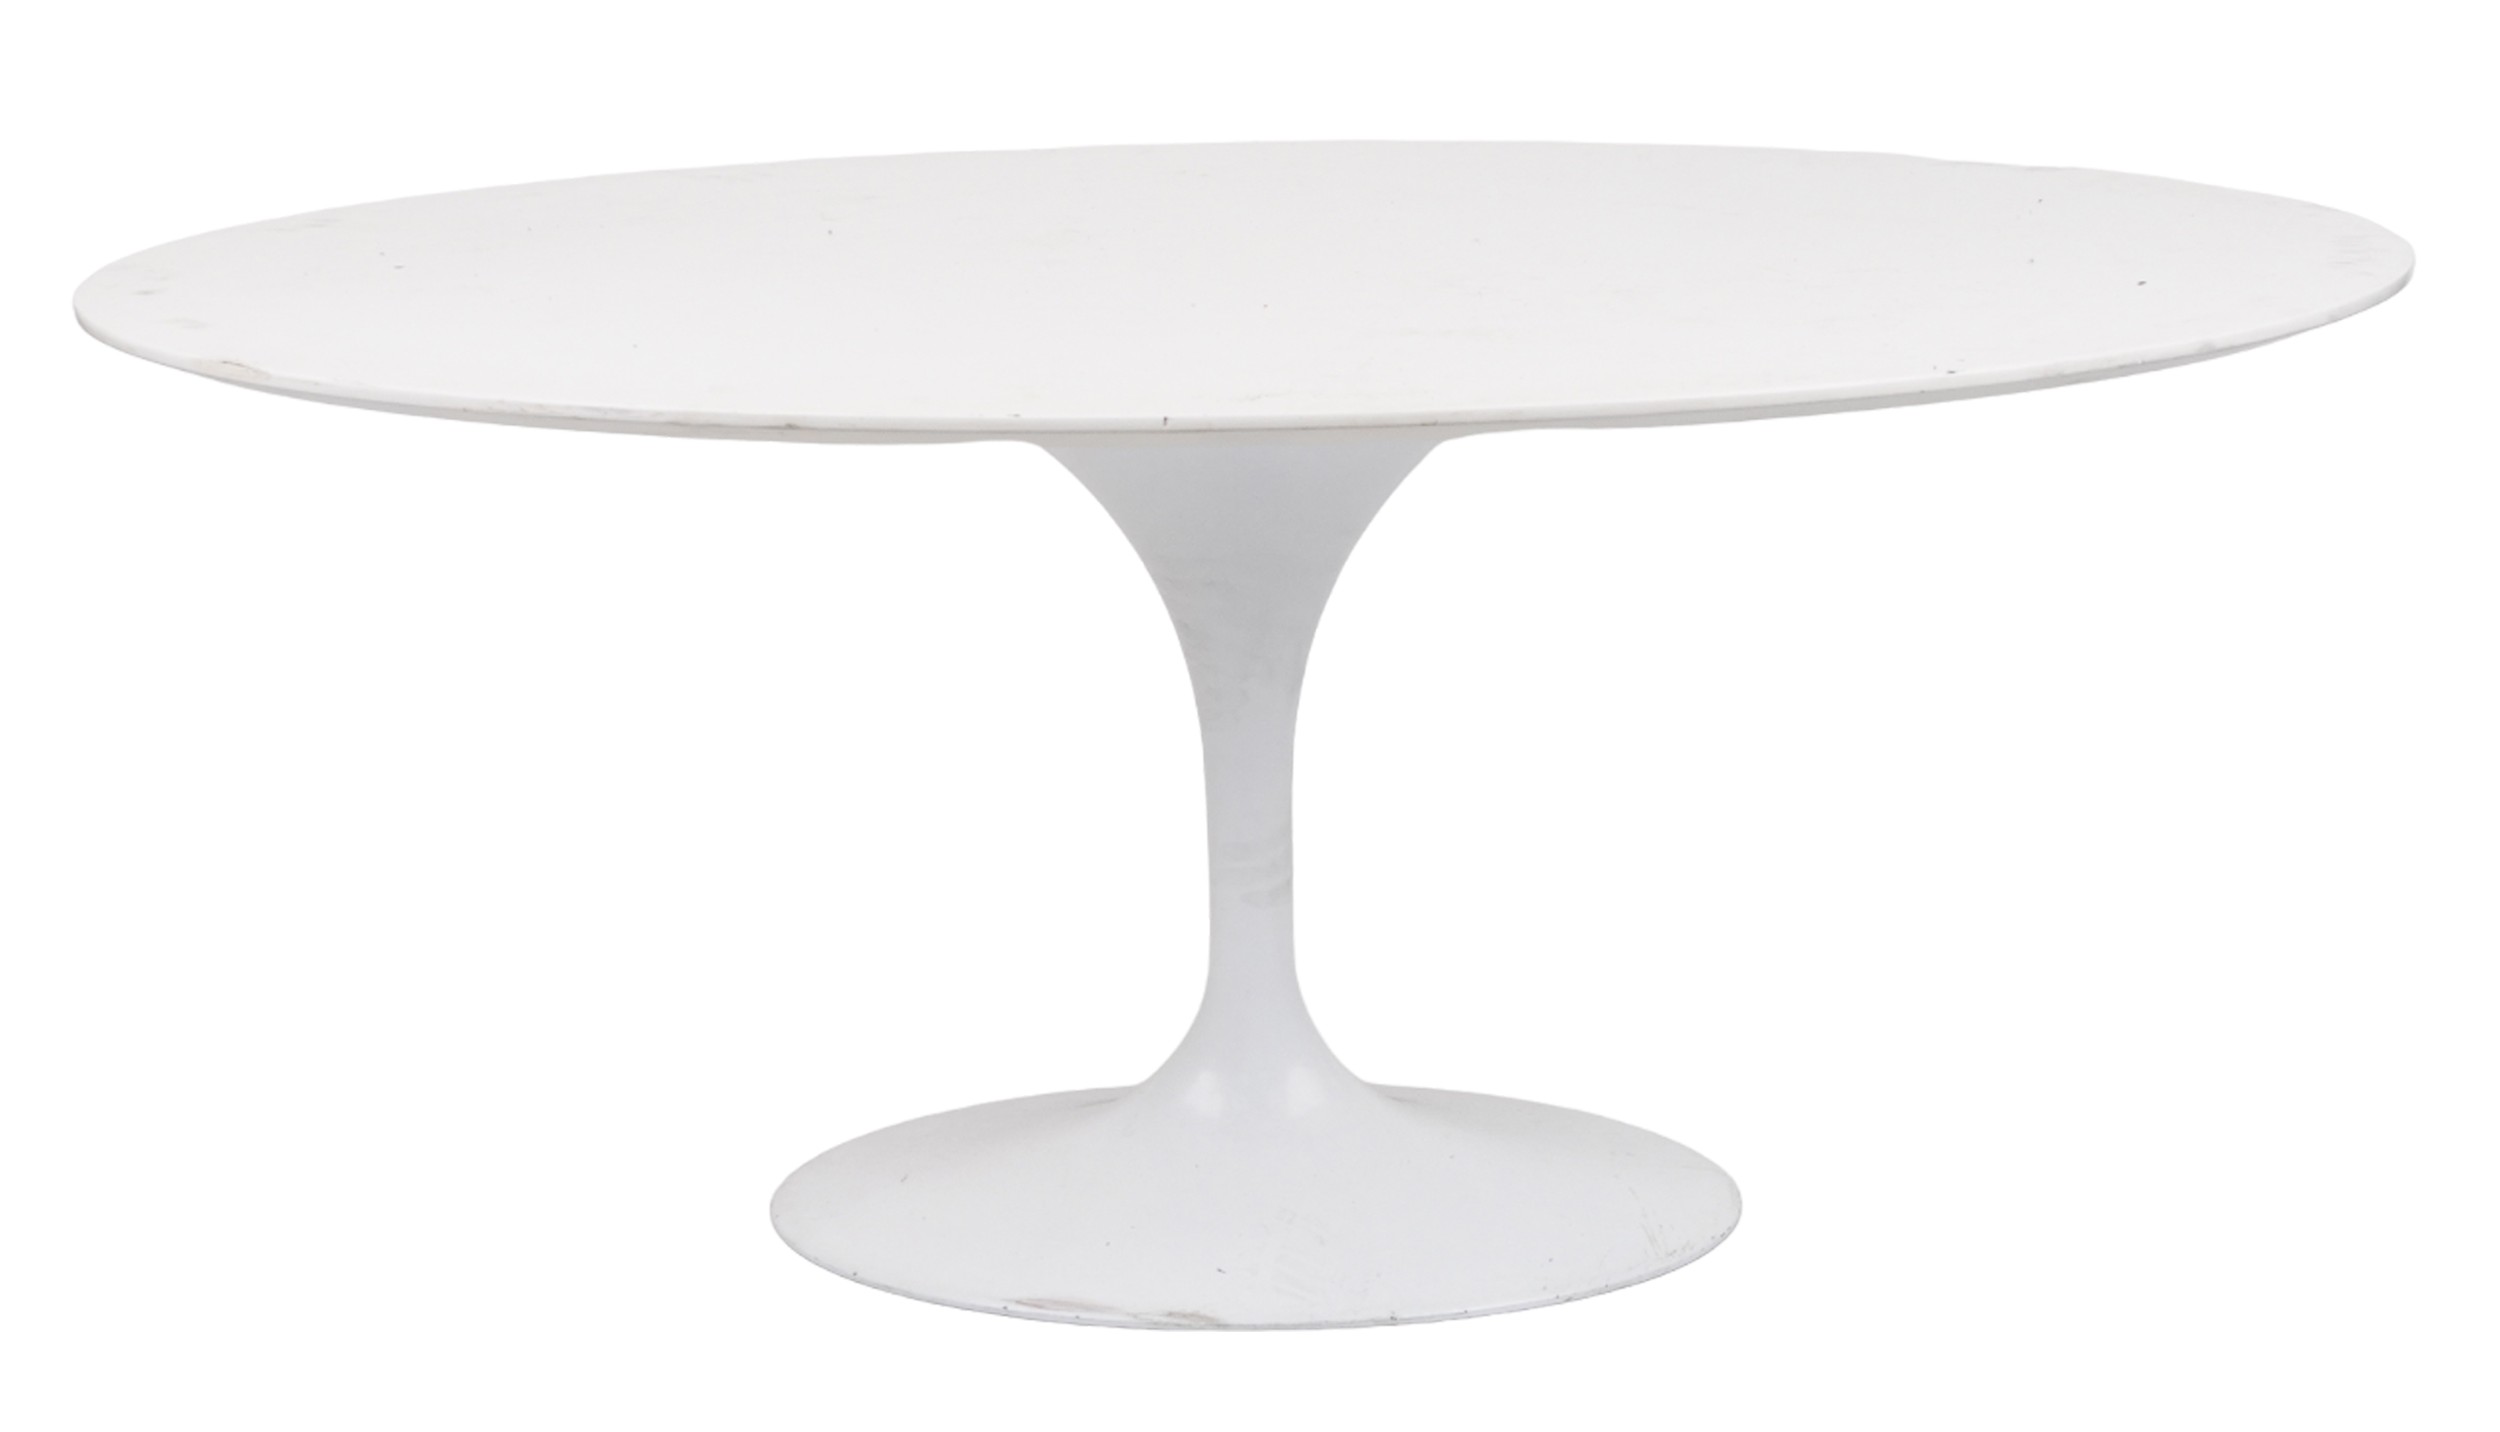 Eero Saarinen design contemporary tulip dining table, 75cm H x 170cm W x 110cm D